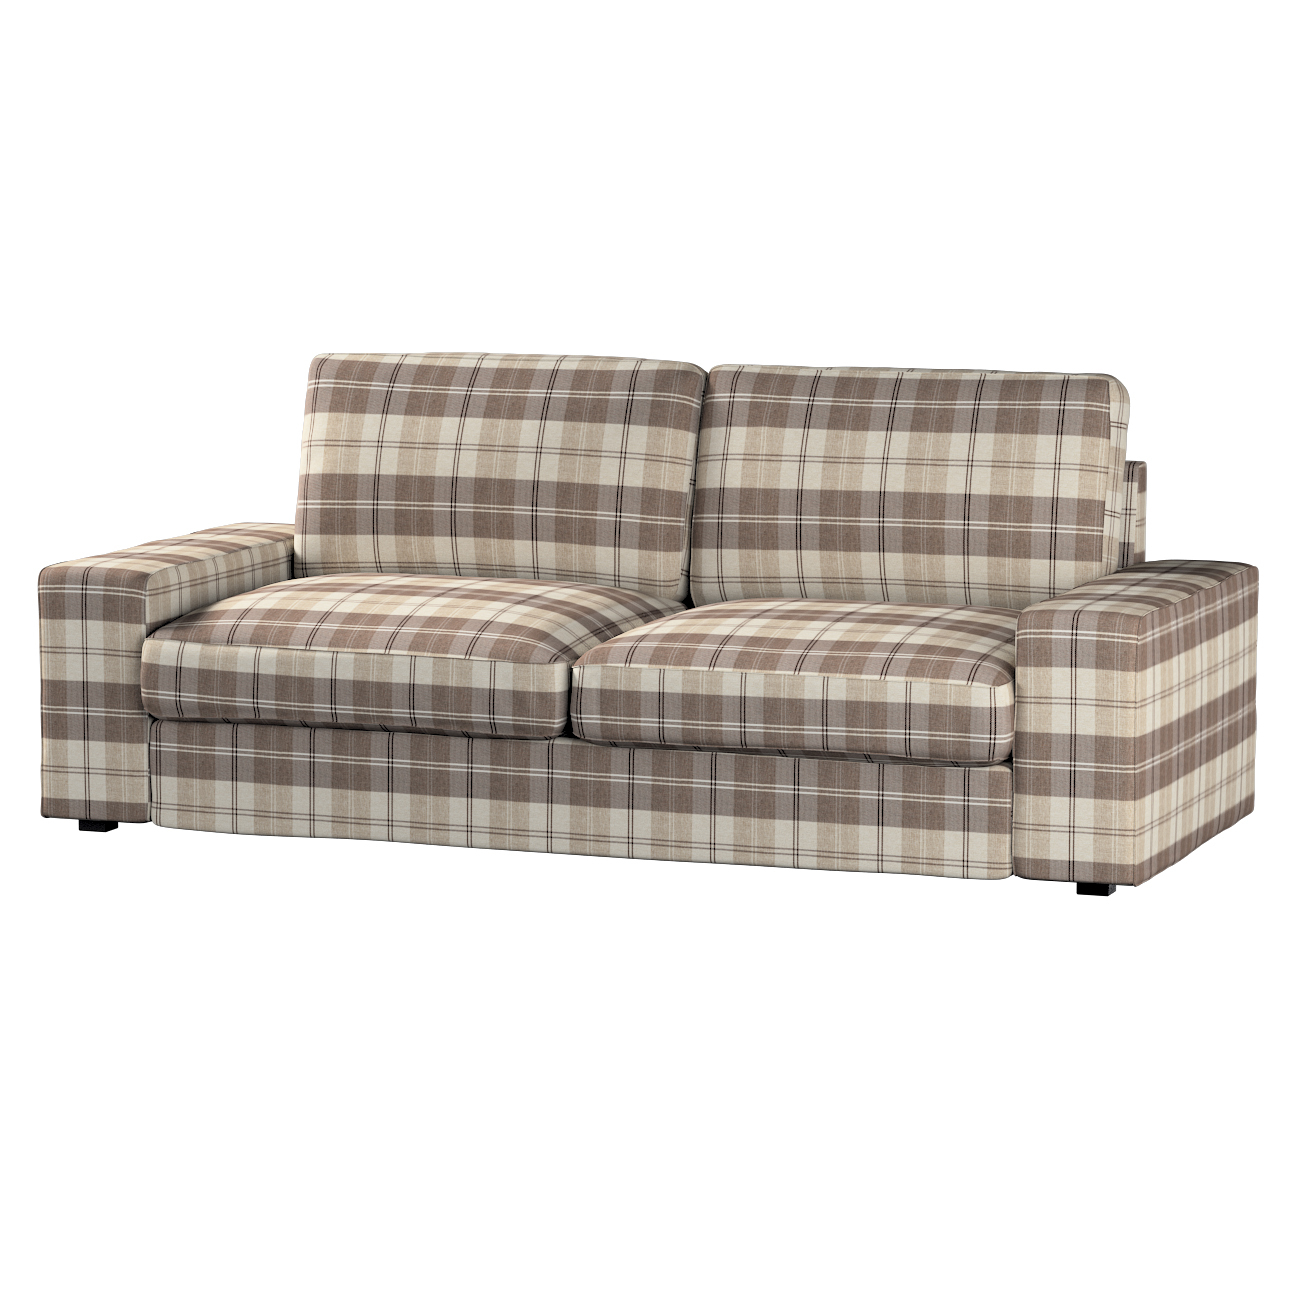 Bezug für Kivik 3-Sitzer Sofa, braun-beige, Bezug für Sofa Kivik 3-Sitzer, günstig online kaufen